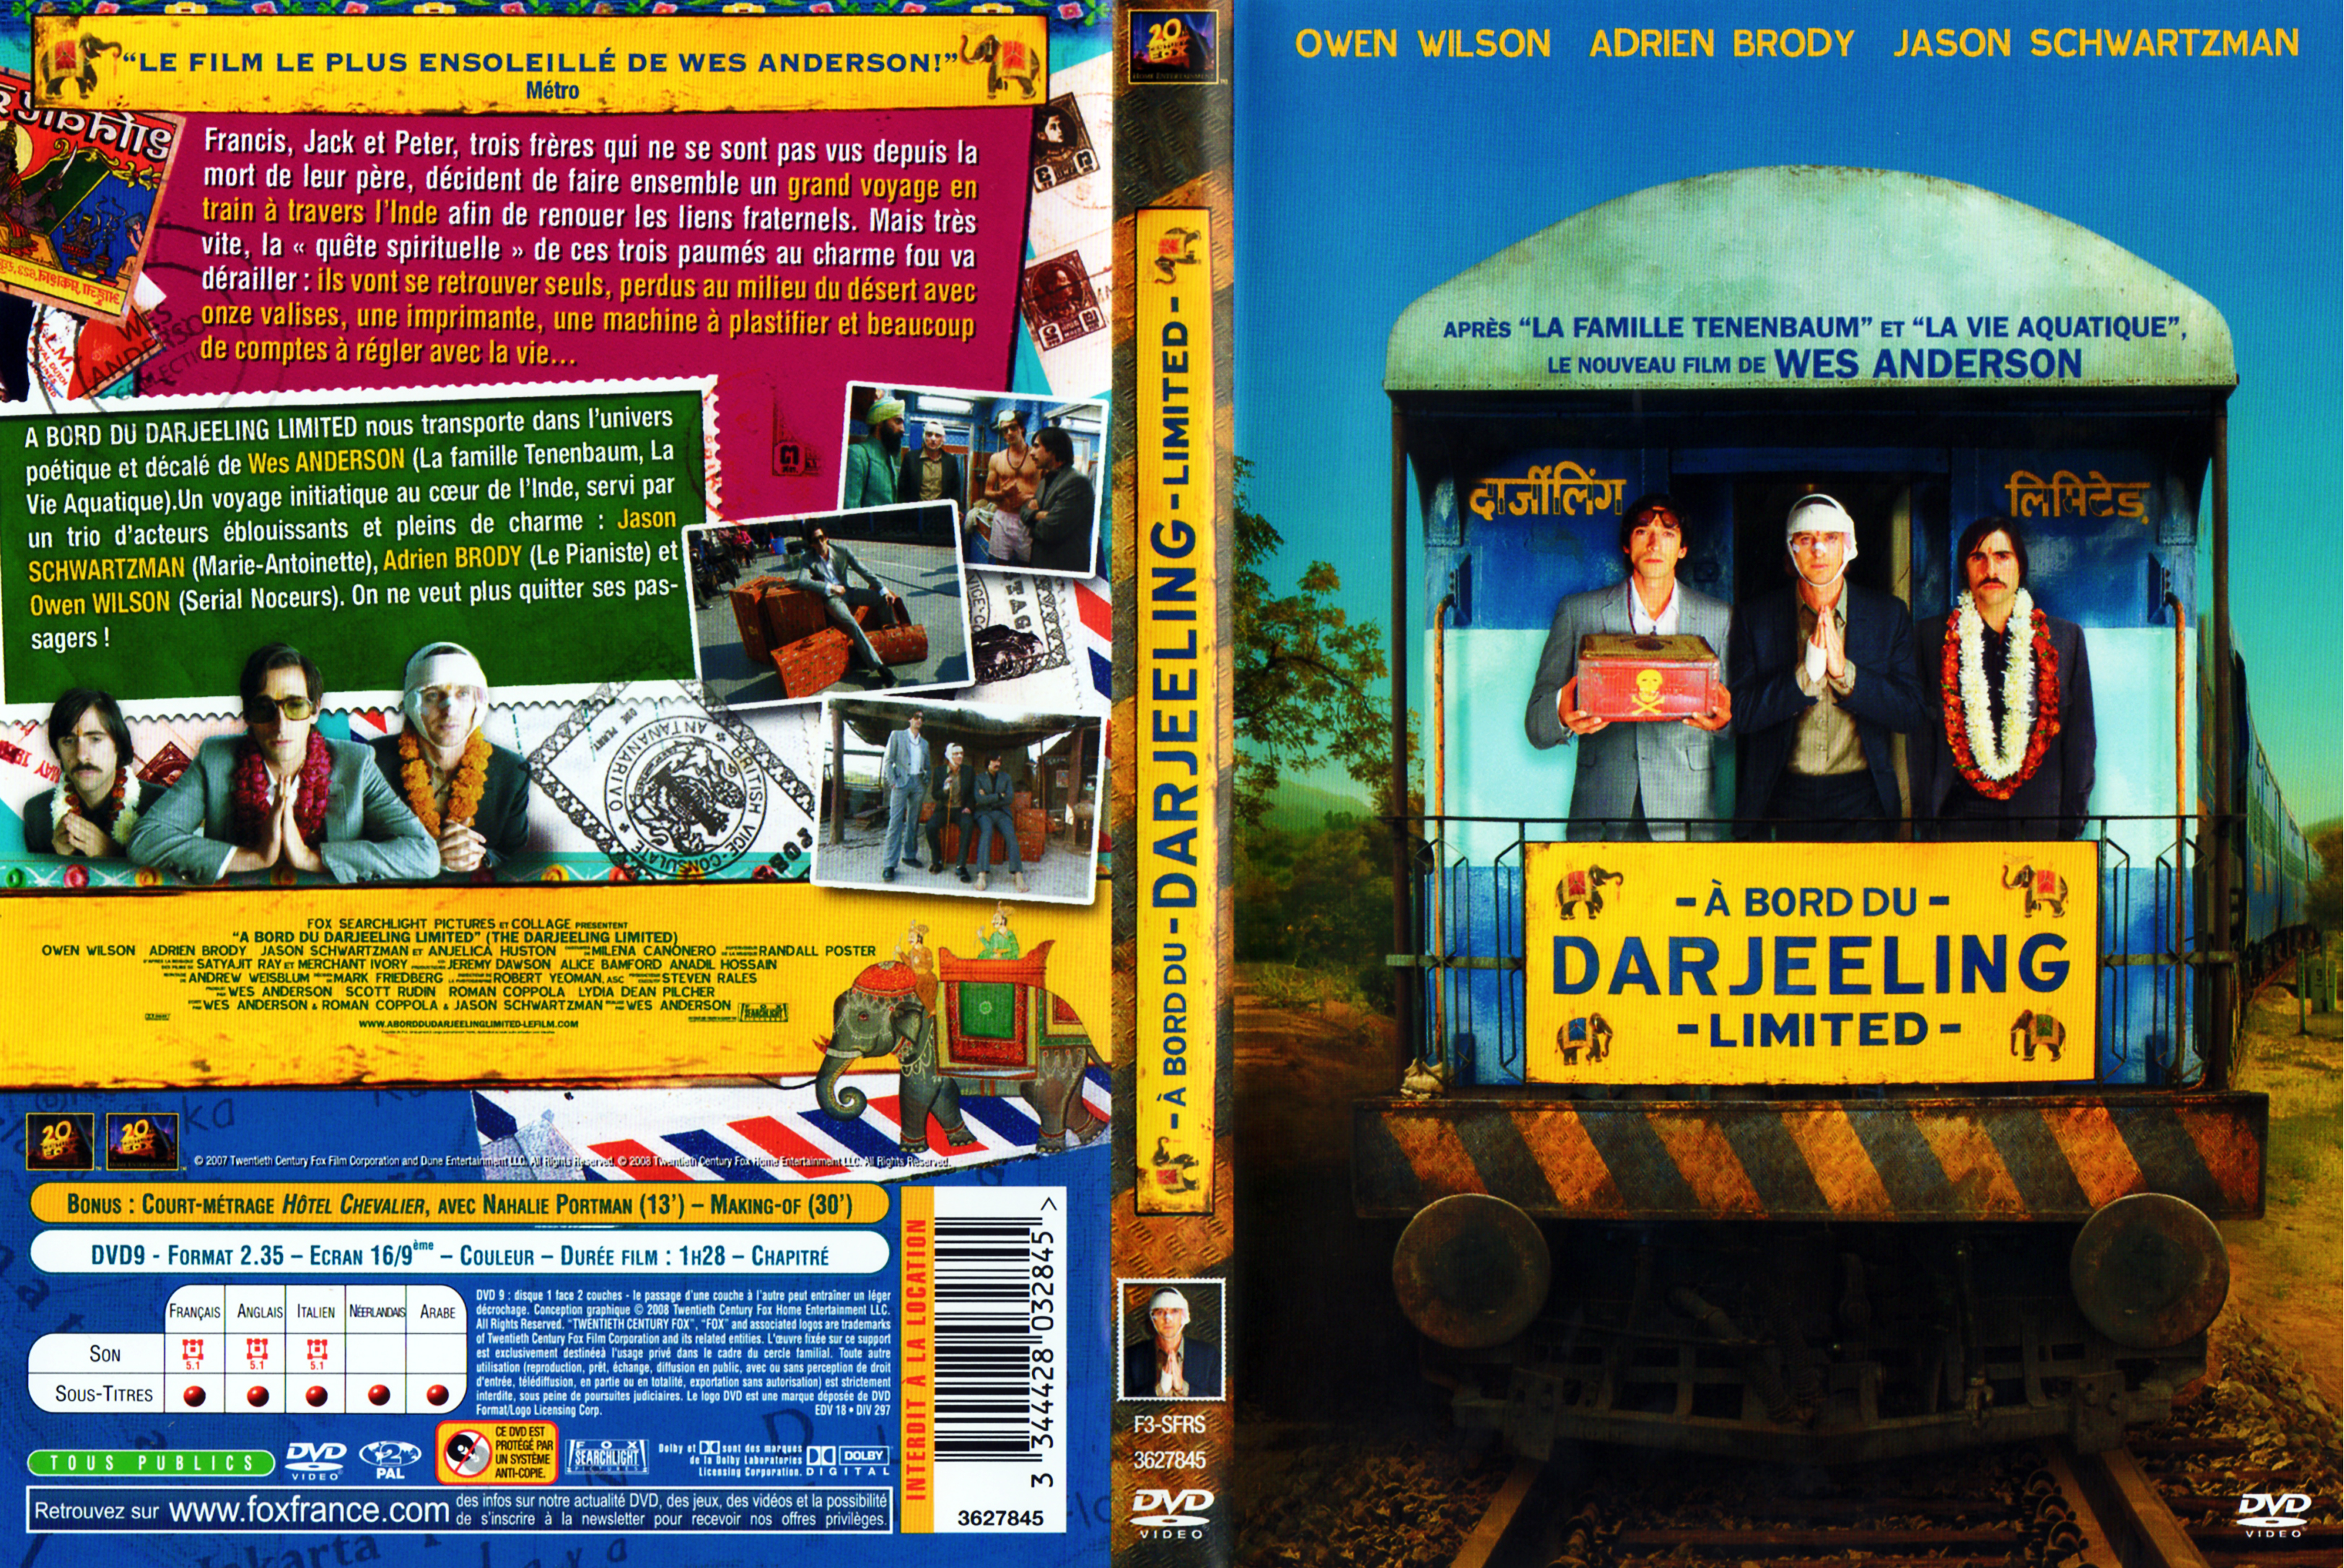 Jaquette DVD A bord du Darjeeling limited v2